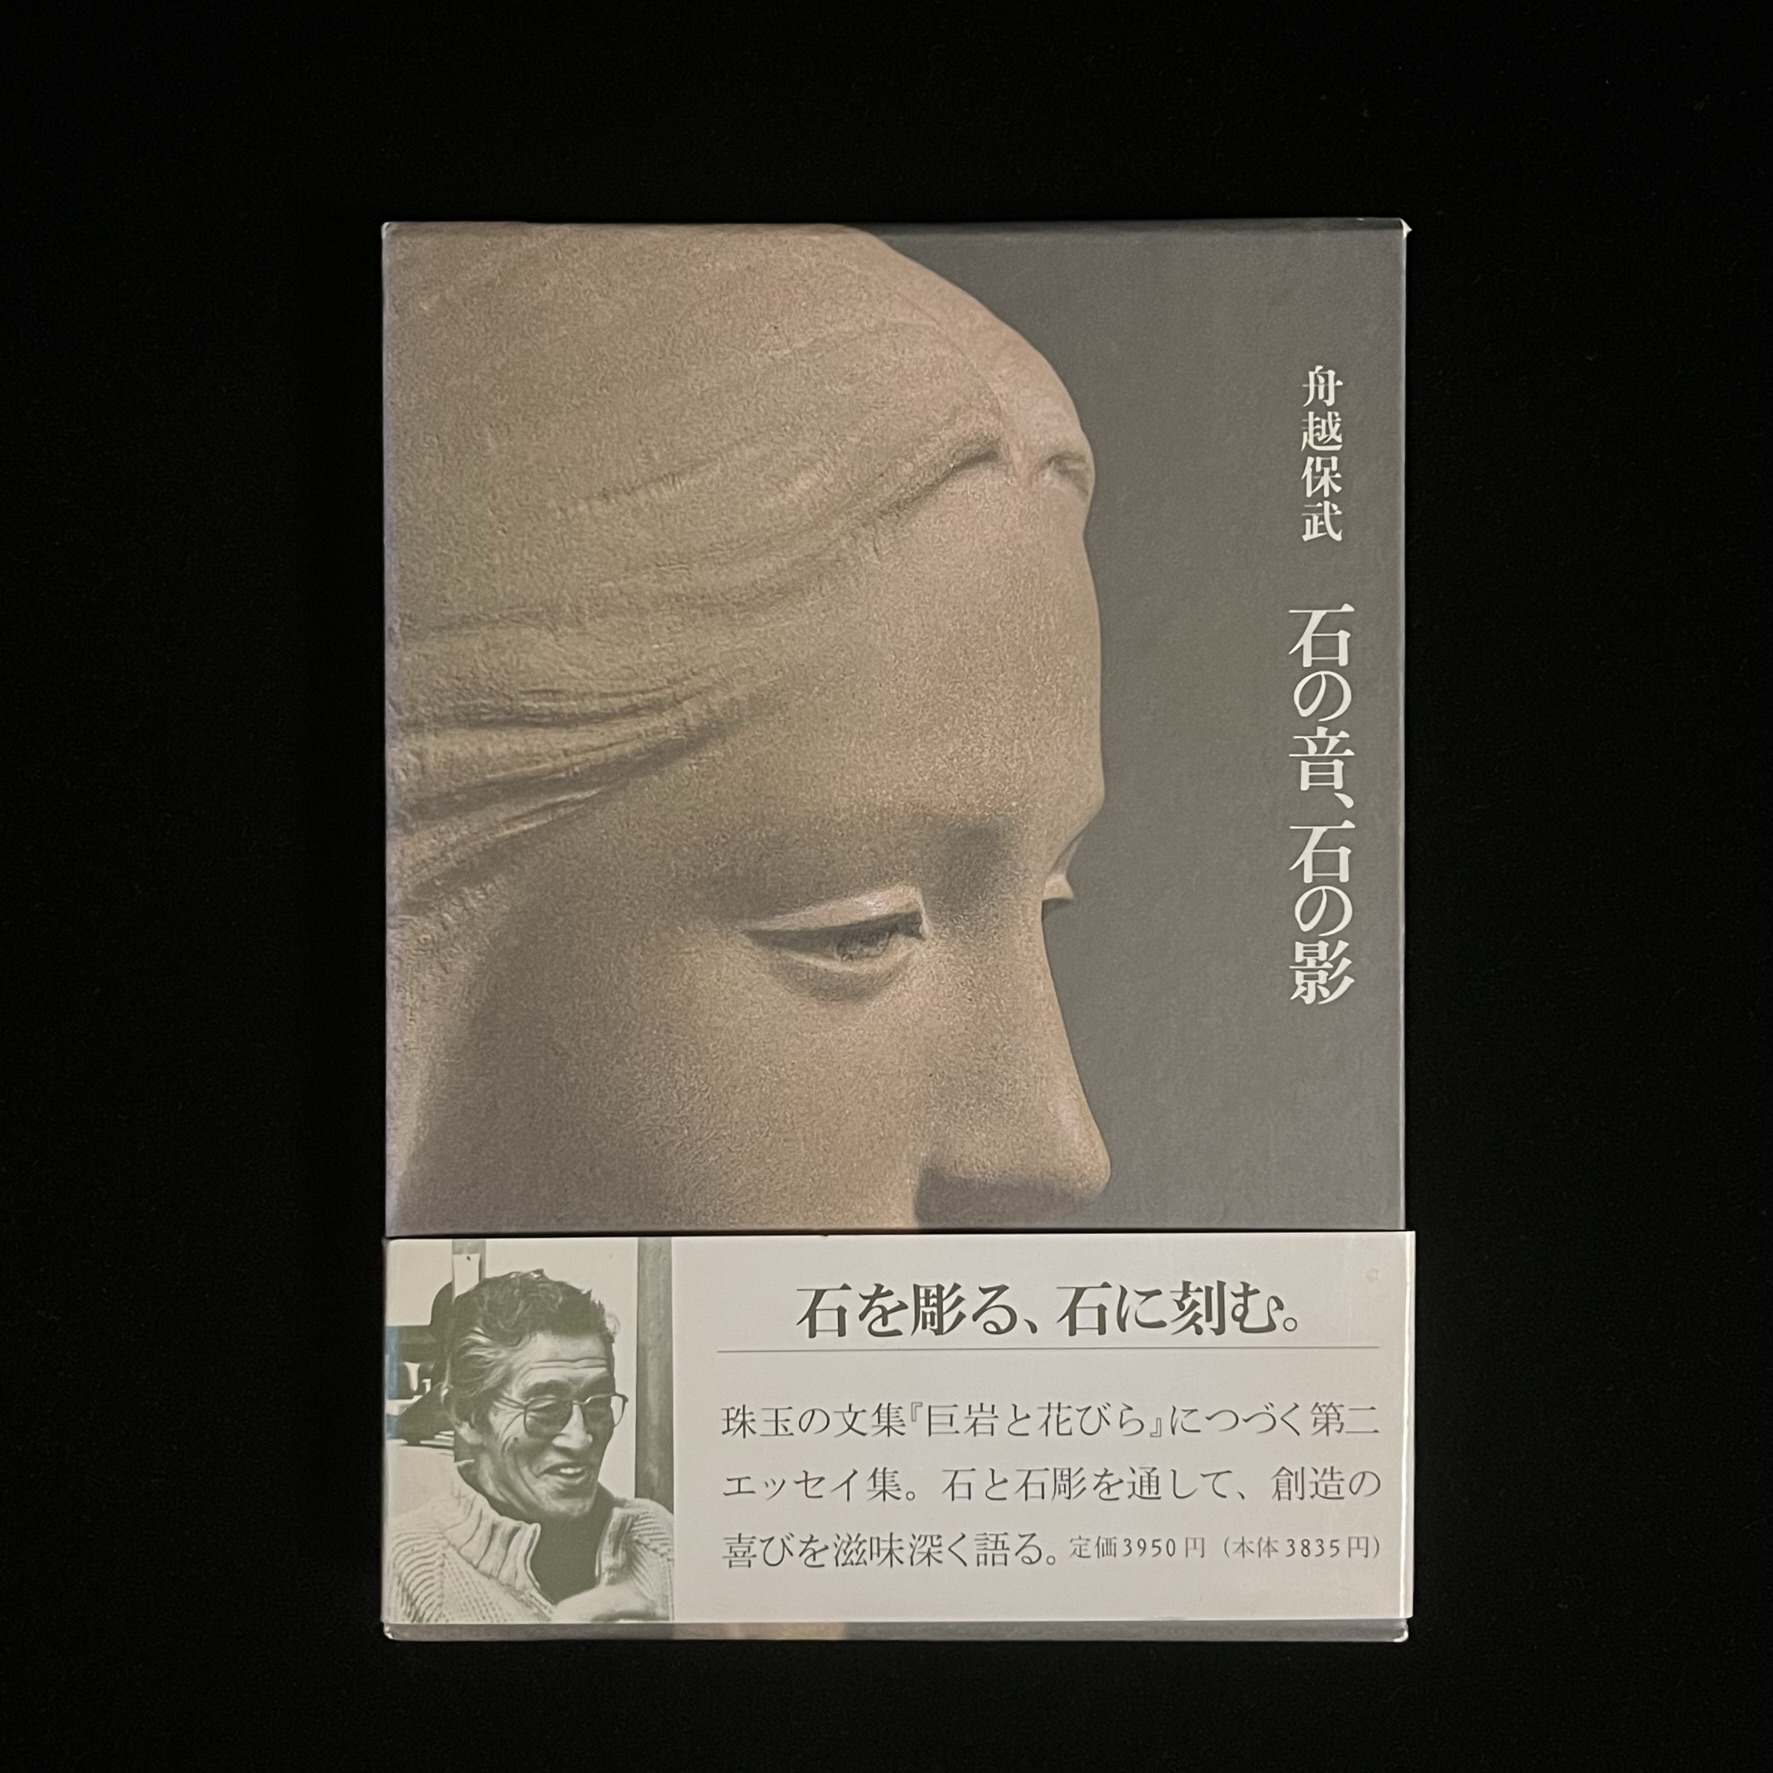 『石の音、石の影』の本の表紙の写真。表紙には、舟越保武さんの「パンセ'82」という女性の頭部の彫像の写真が載っています。